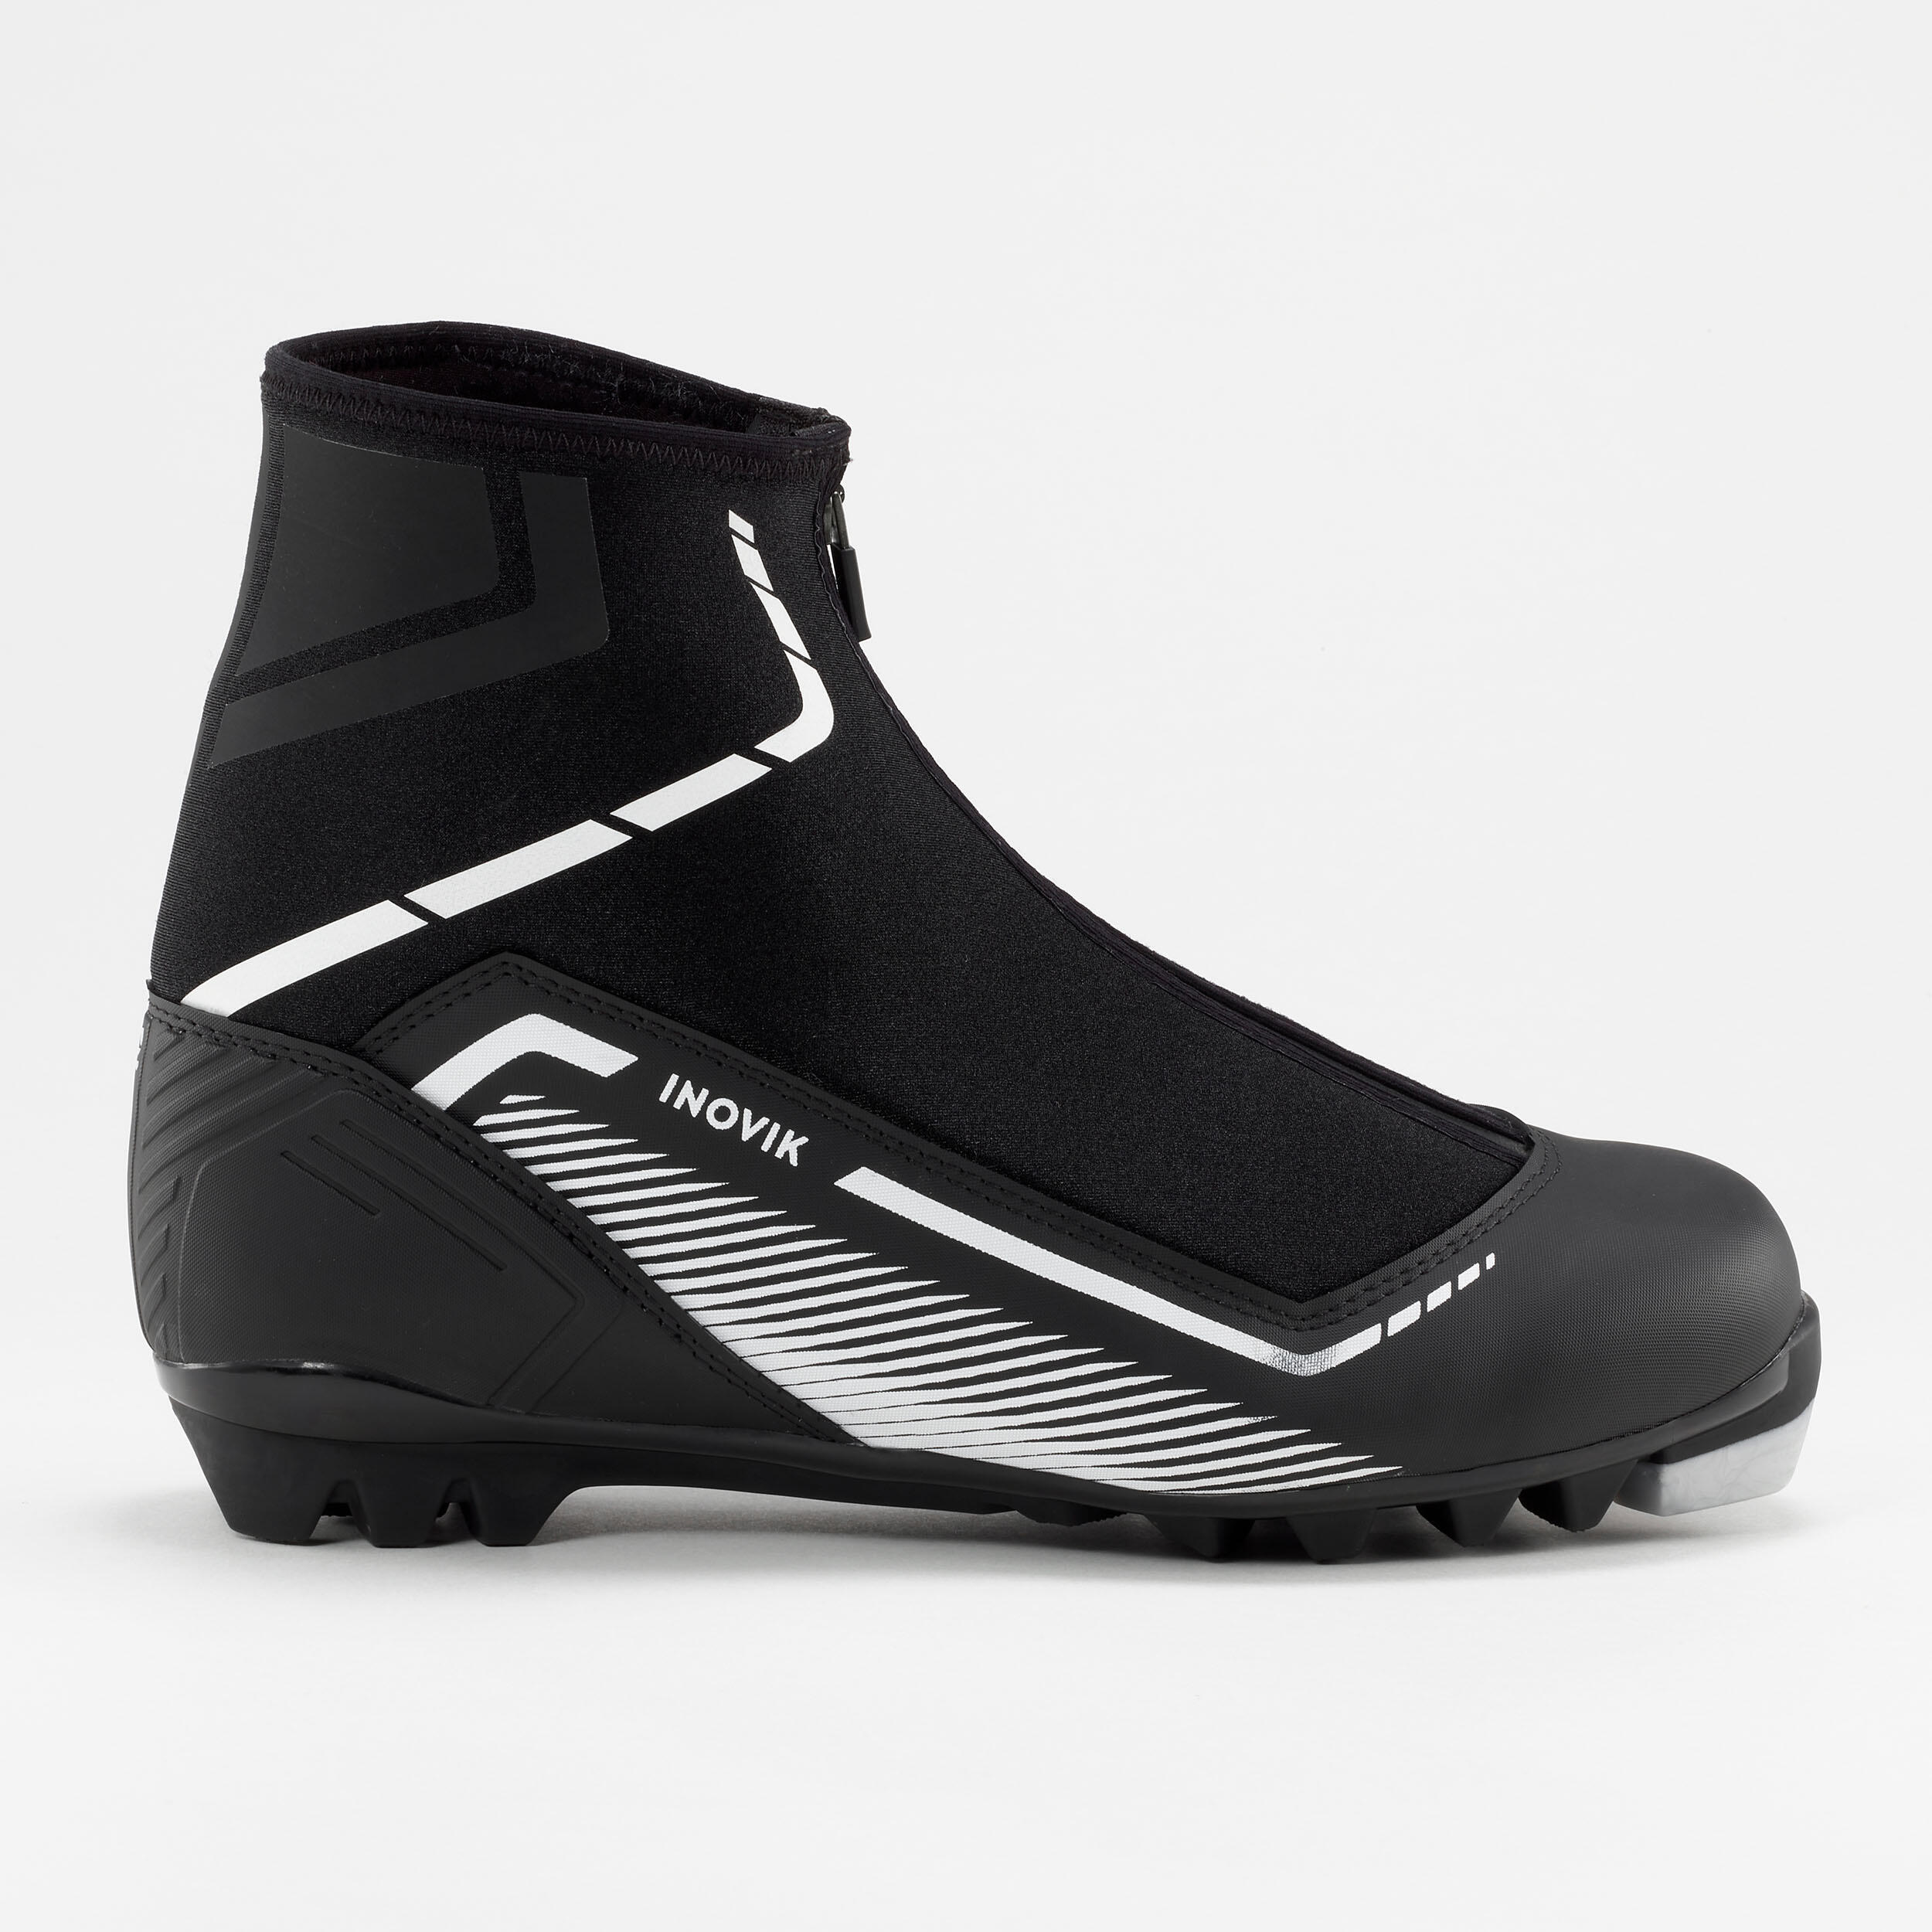 Лыжные ботинки Decathlon Inovik XC S150, черный цена и фото